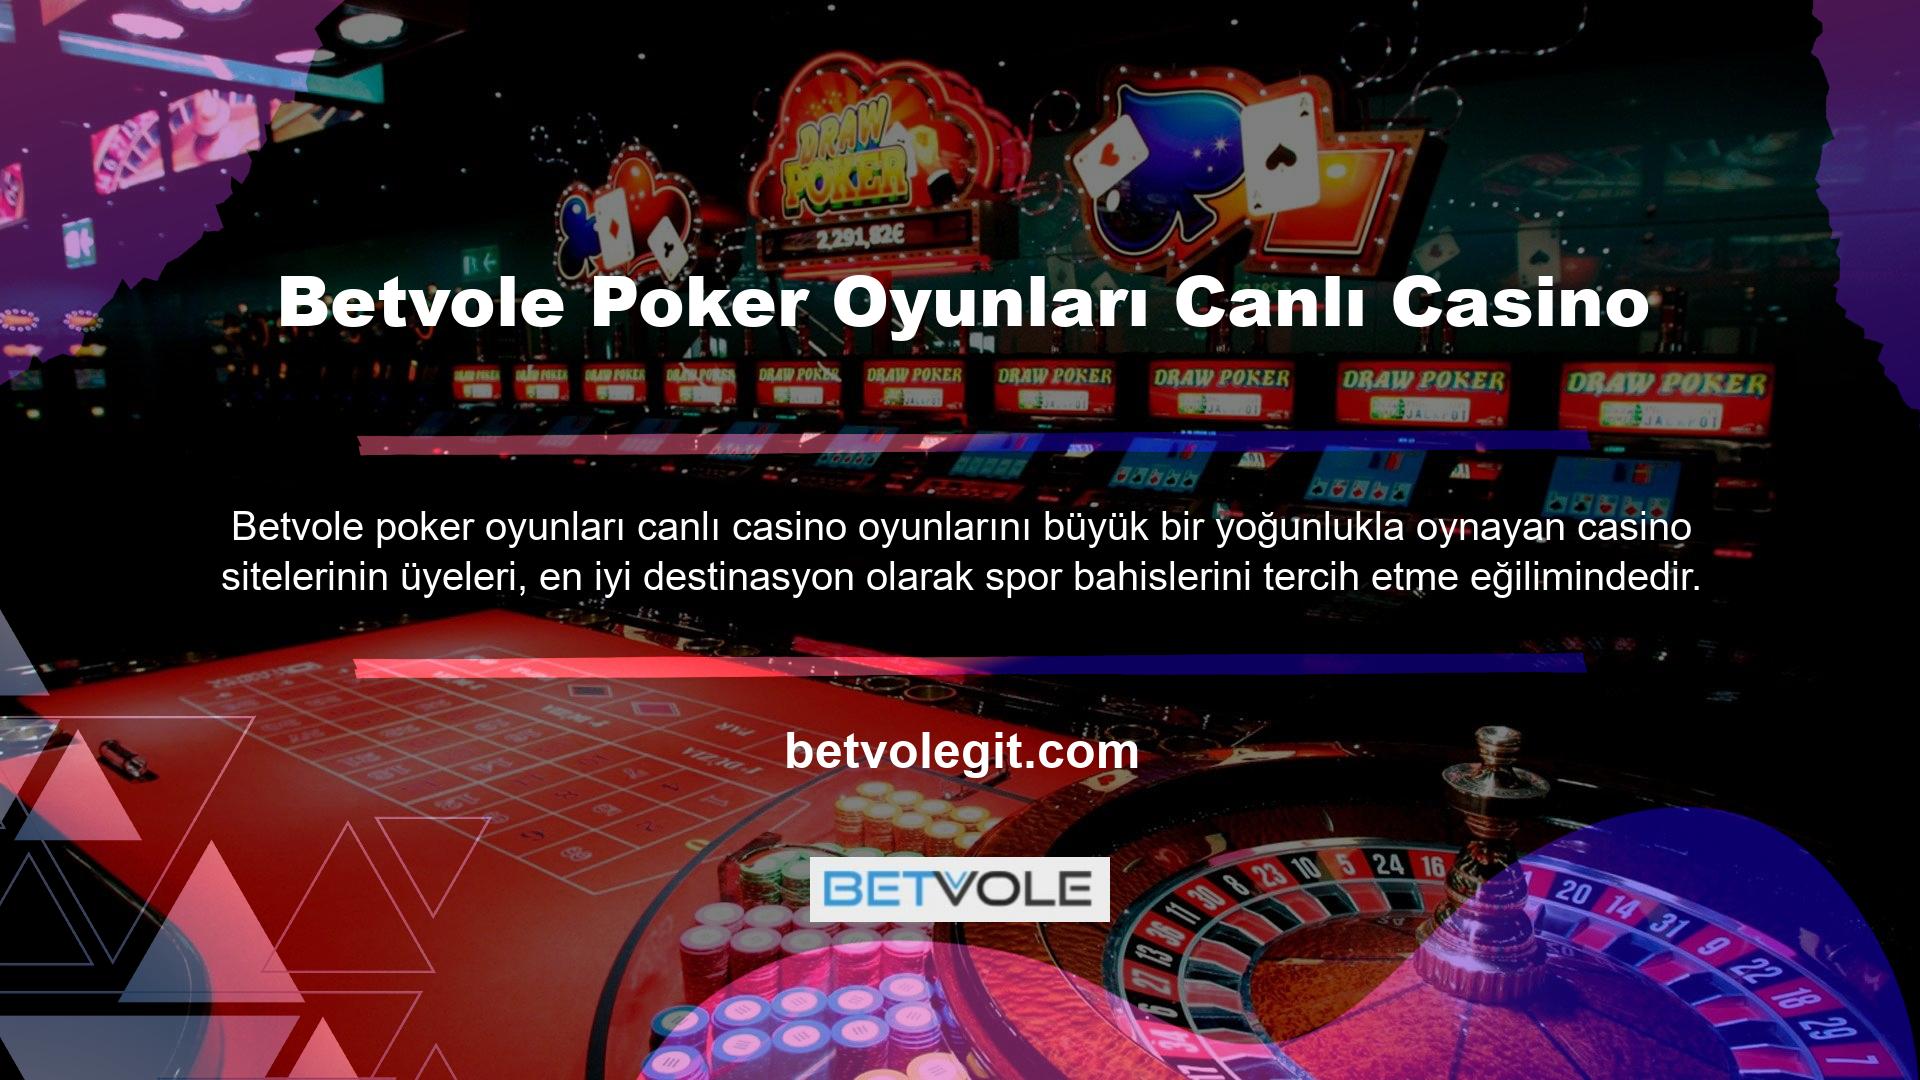 Betvole bahis sitesi, geniş casino oyunları yelpazesi ve güvenilir bir bahis platformu olarak tanınması nedeniyle büyük saygı görmektedir